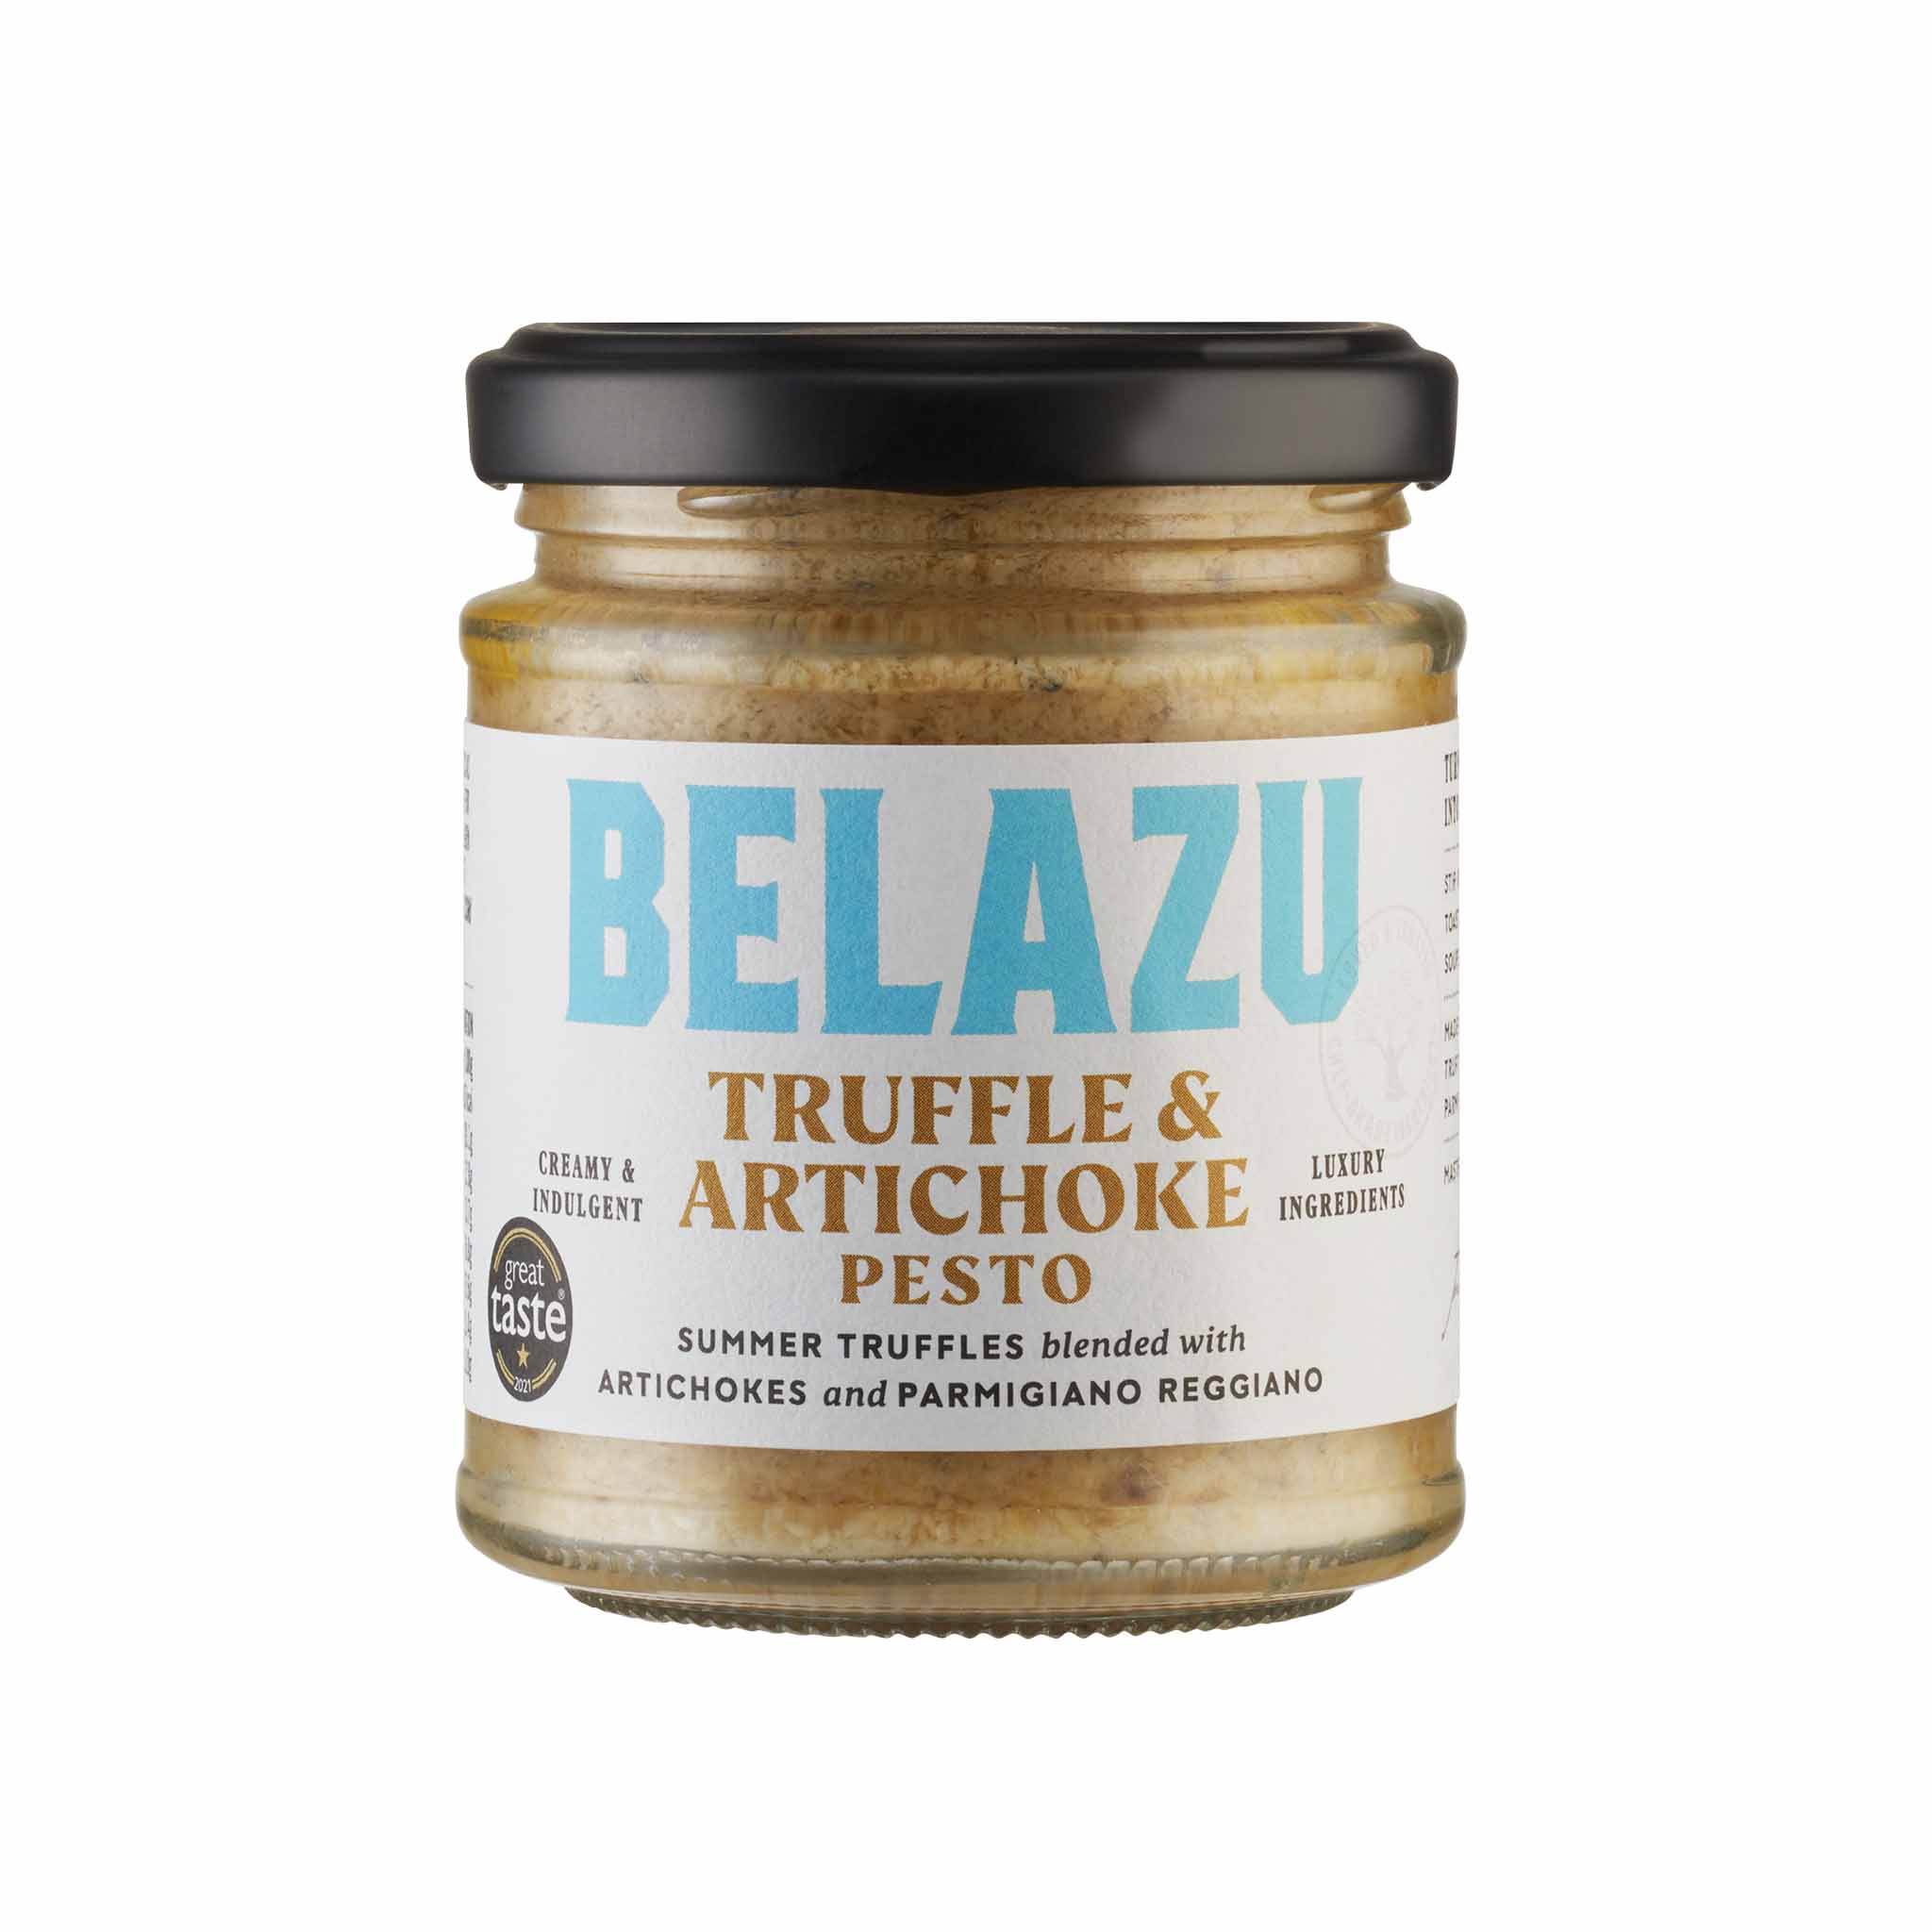 Belazu Truffle Artichoke Pesto in a Glass Jar